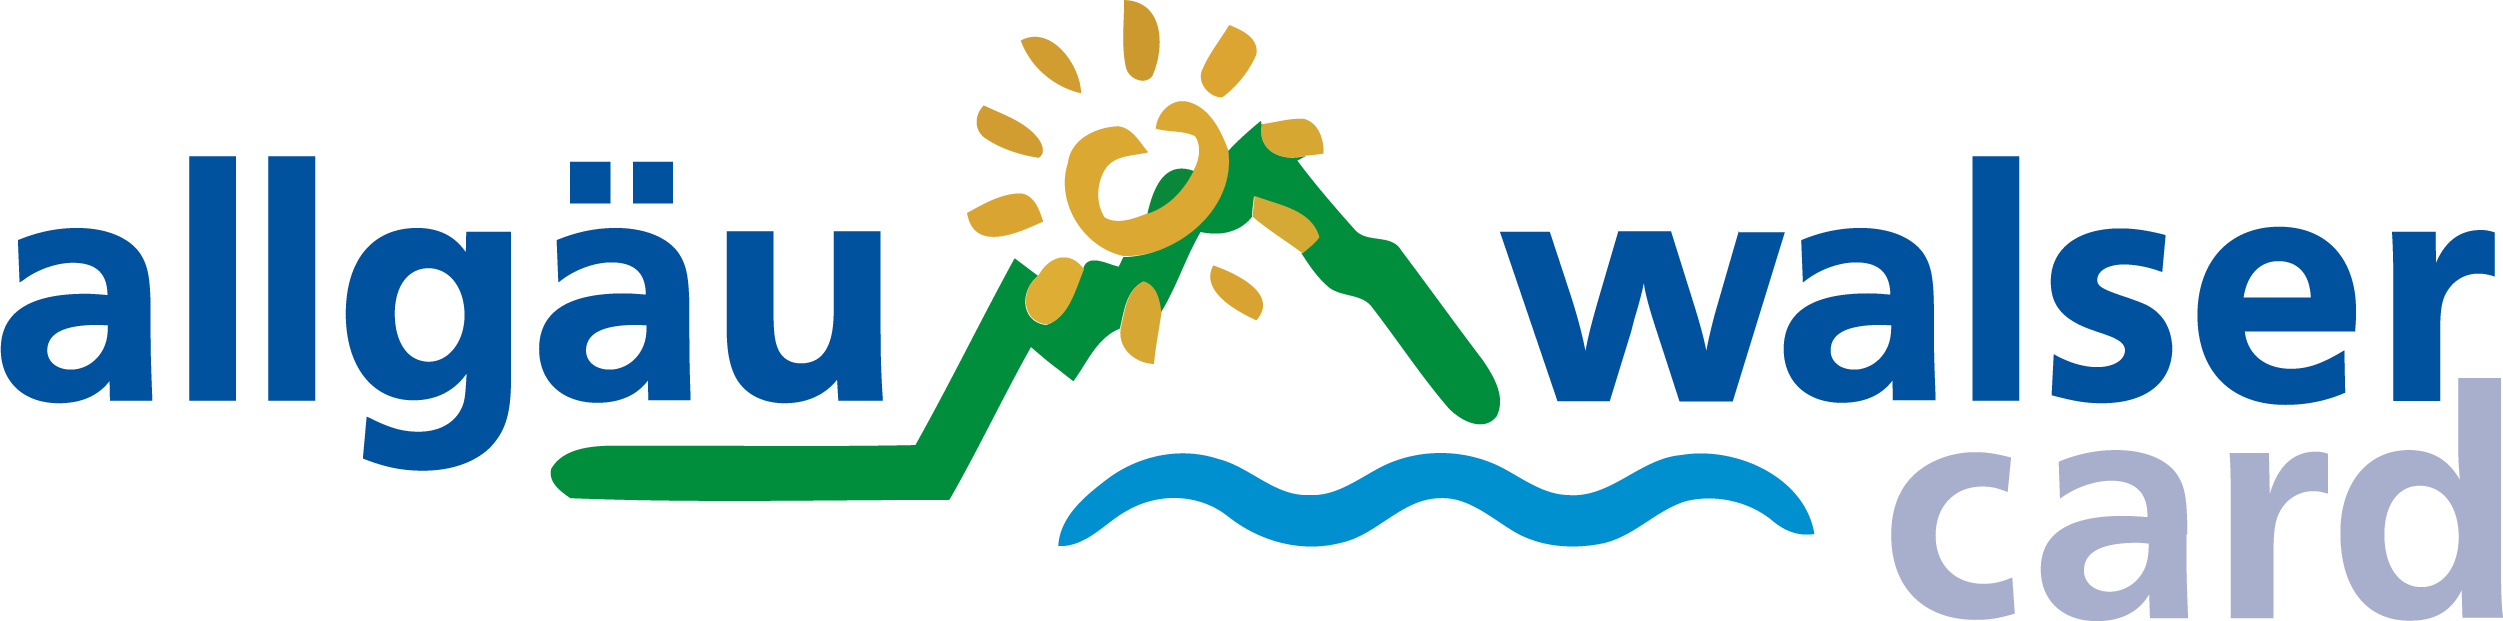 AWC-Logo